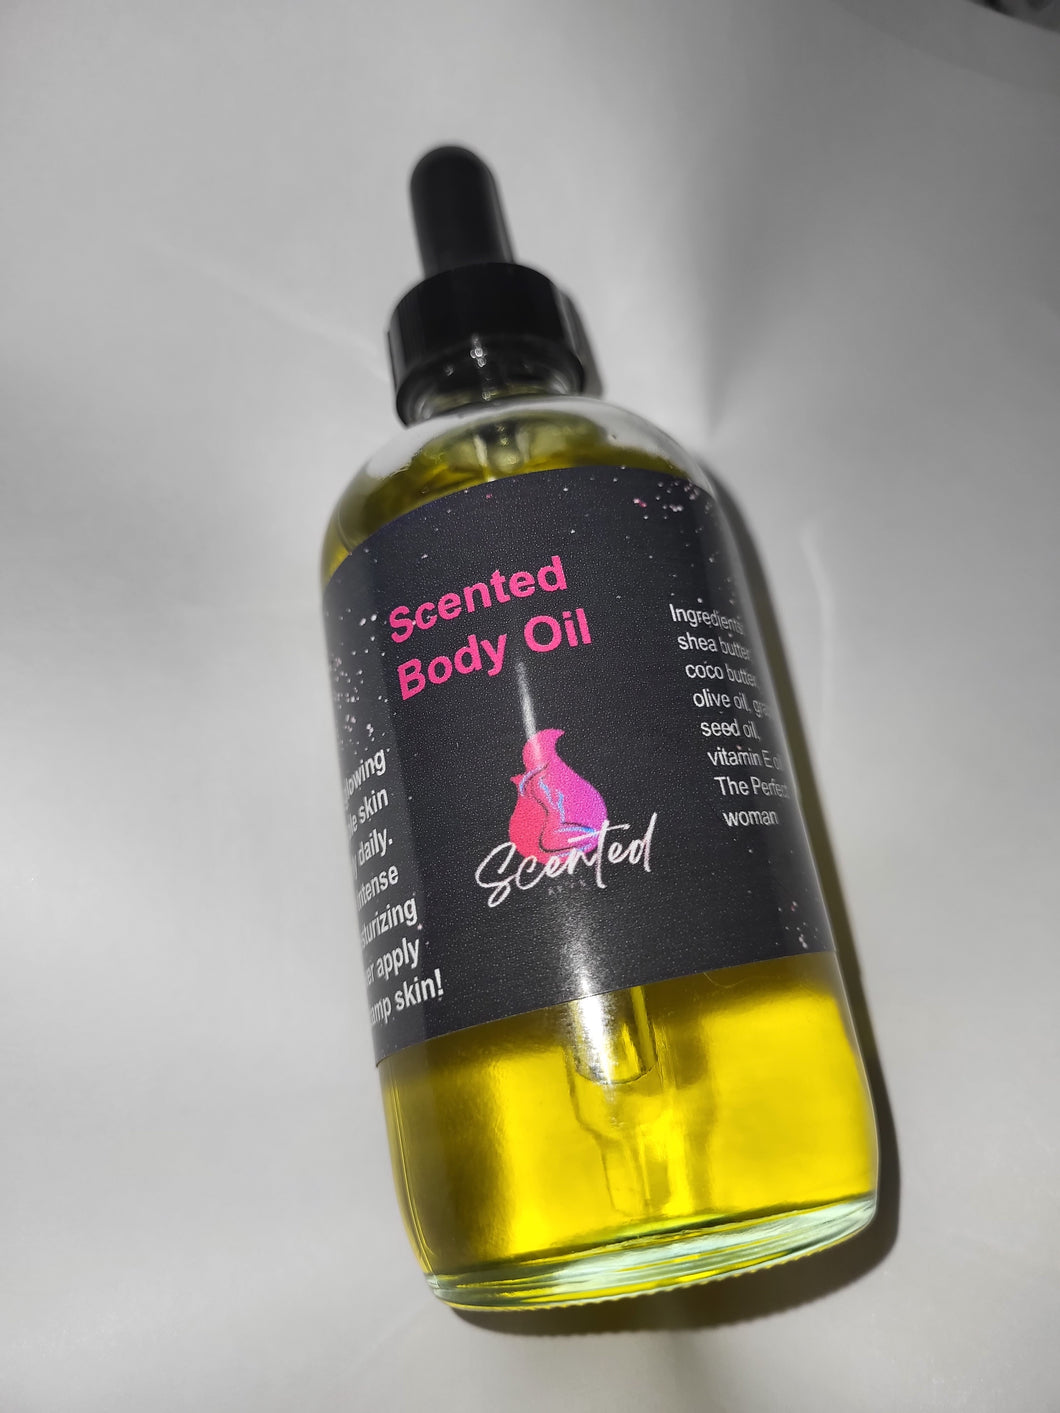 Body oil!